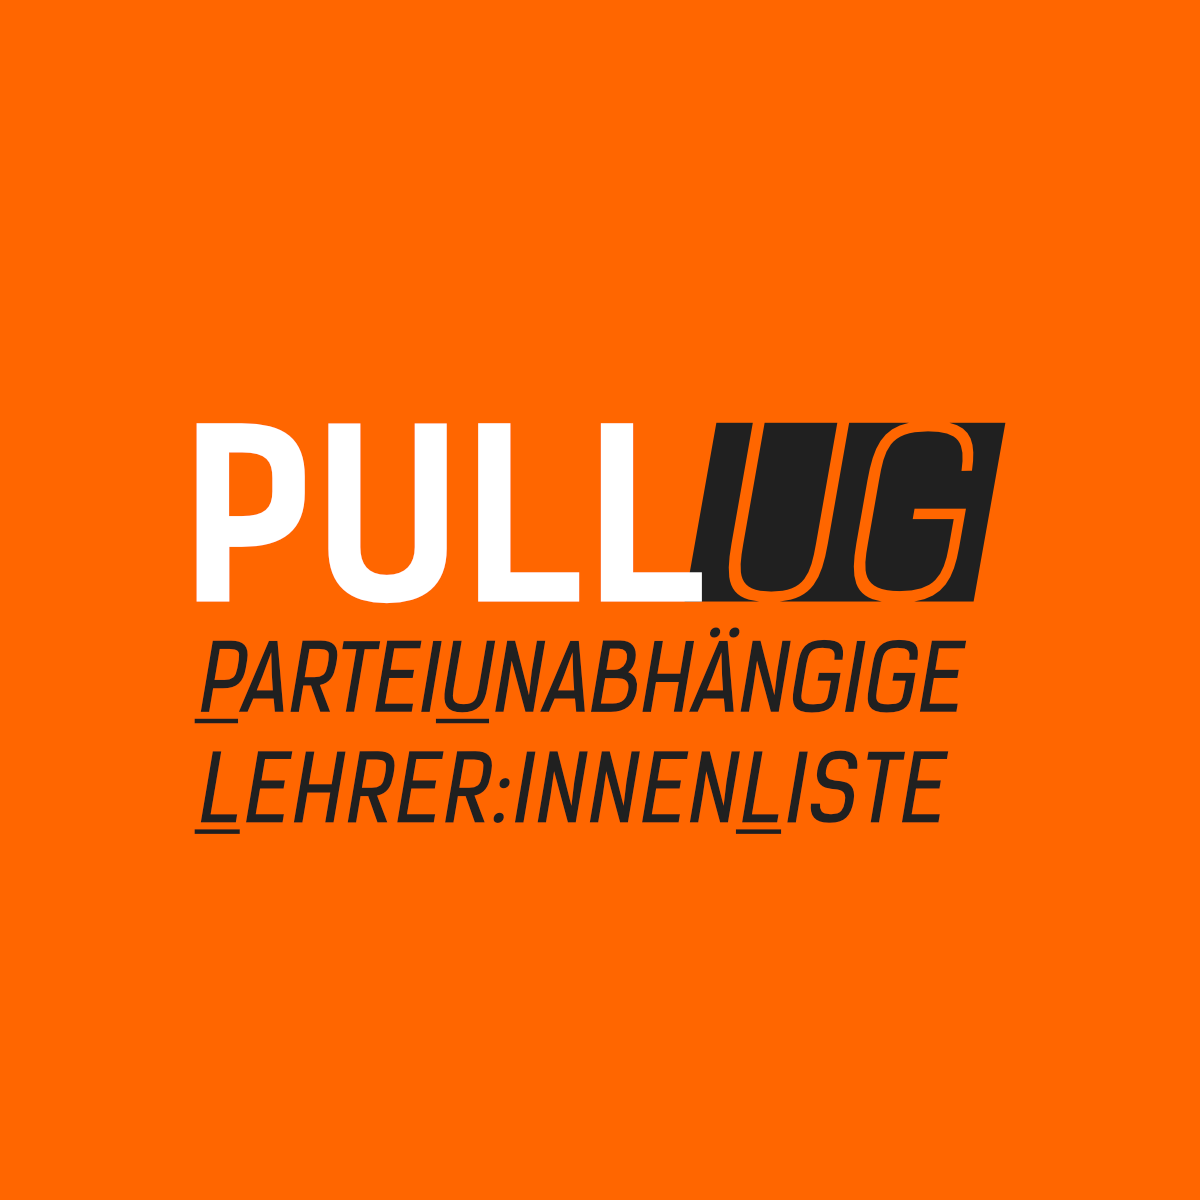 PULL UG - Parteiunabhängige Lehrer:innenListe